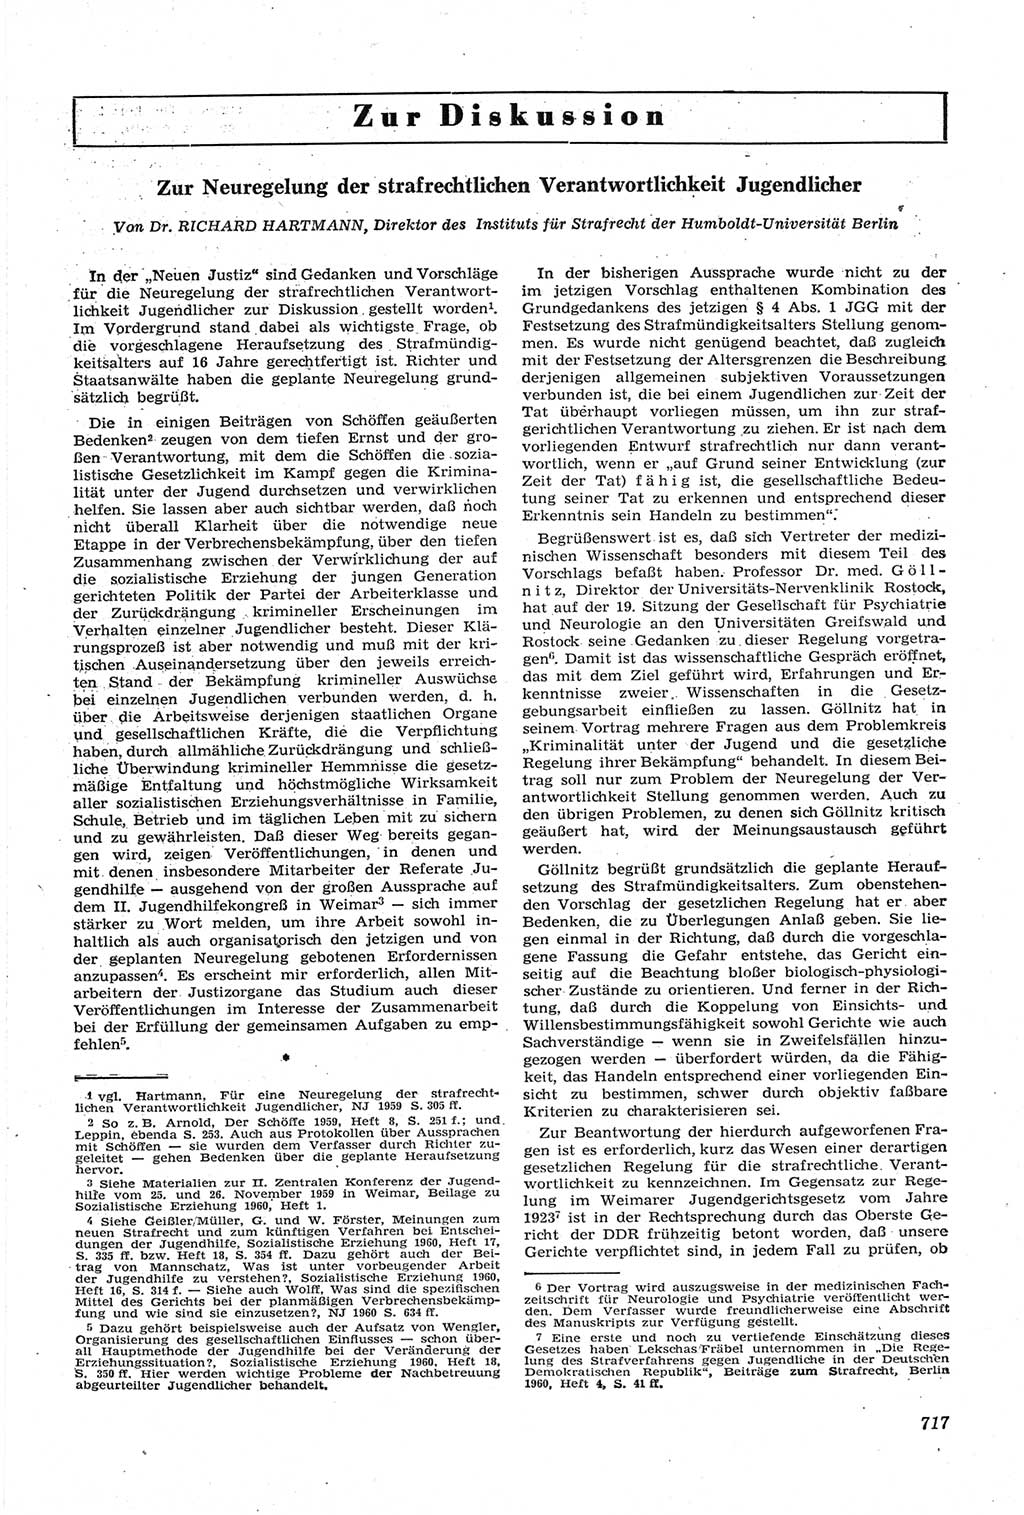 Neue Justiz (NJ), Zeitschrift für Recht und Rechtswissenschaft [Deutsche Demokratische Republik (DDR)], 14. Jahrgang 1960, Seite 717 (NJ DDR 1960, S. 717)